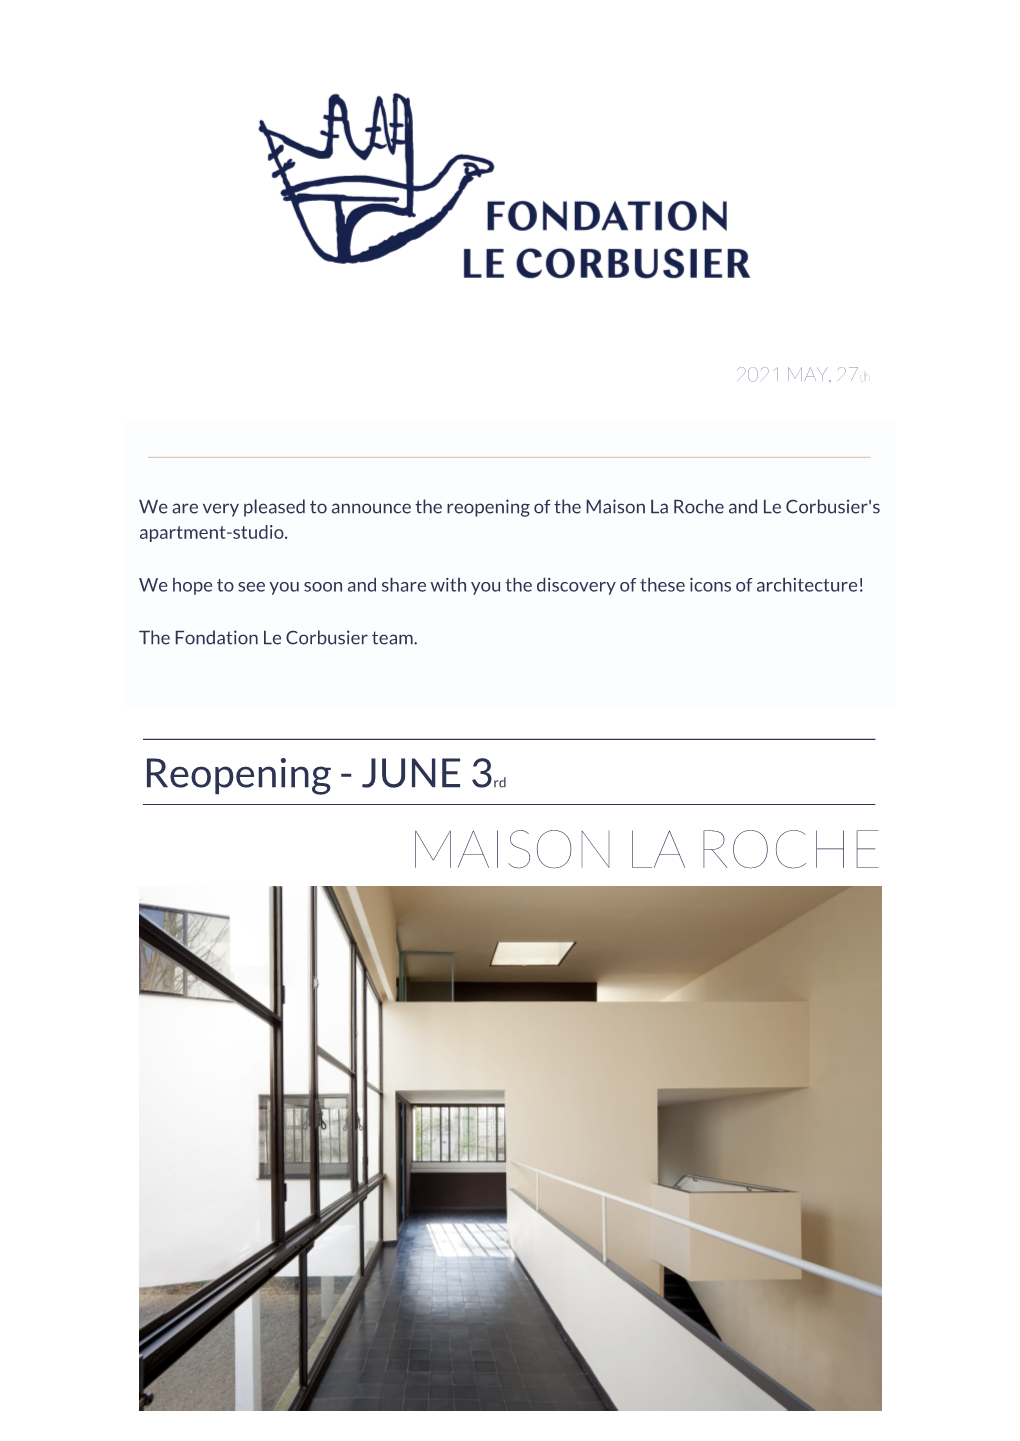 Maison La Roche and Le Corbusier's Apartment-Studio